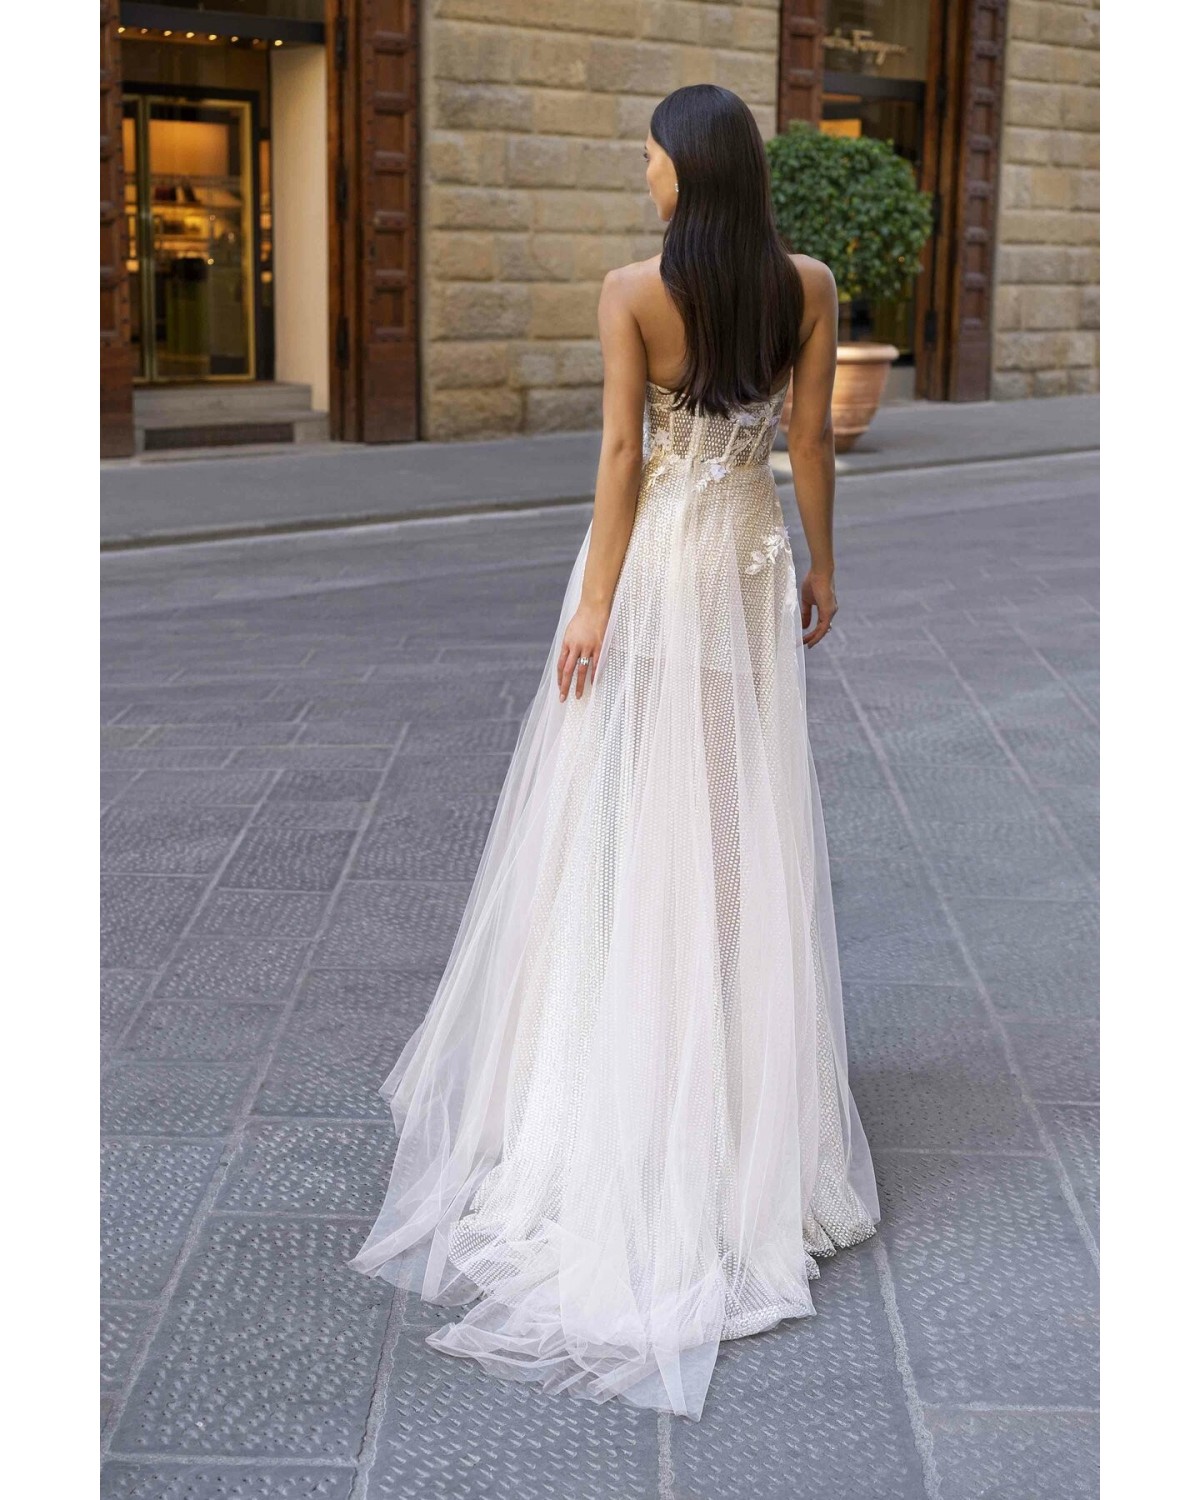 Florence - abito da sposa collezione 2020 - Muse by Berta